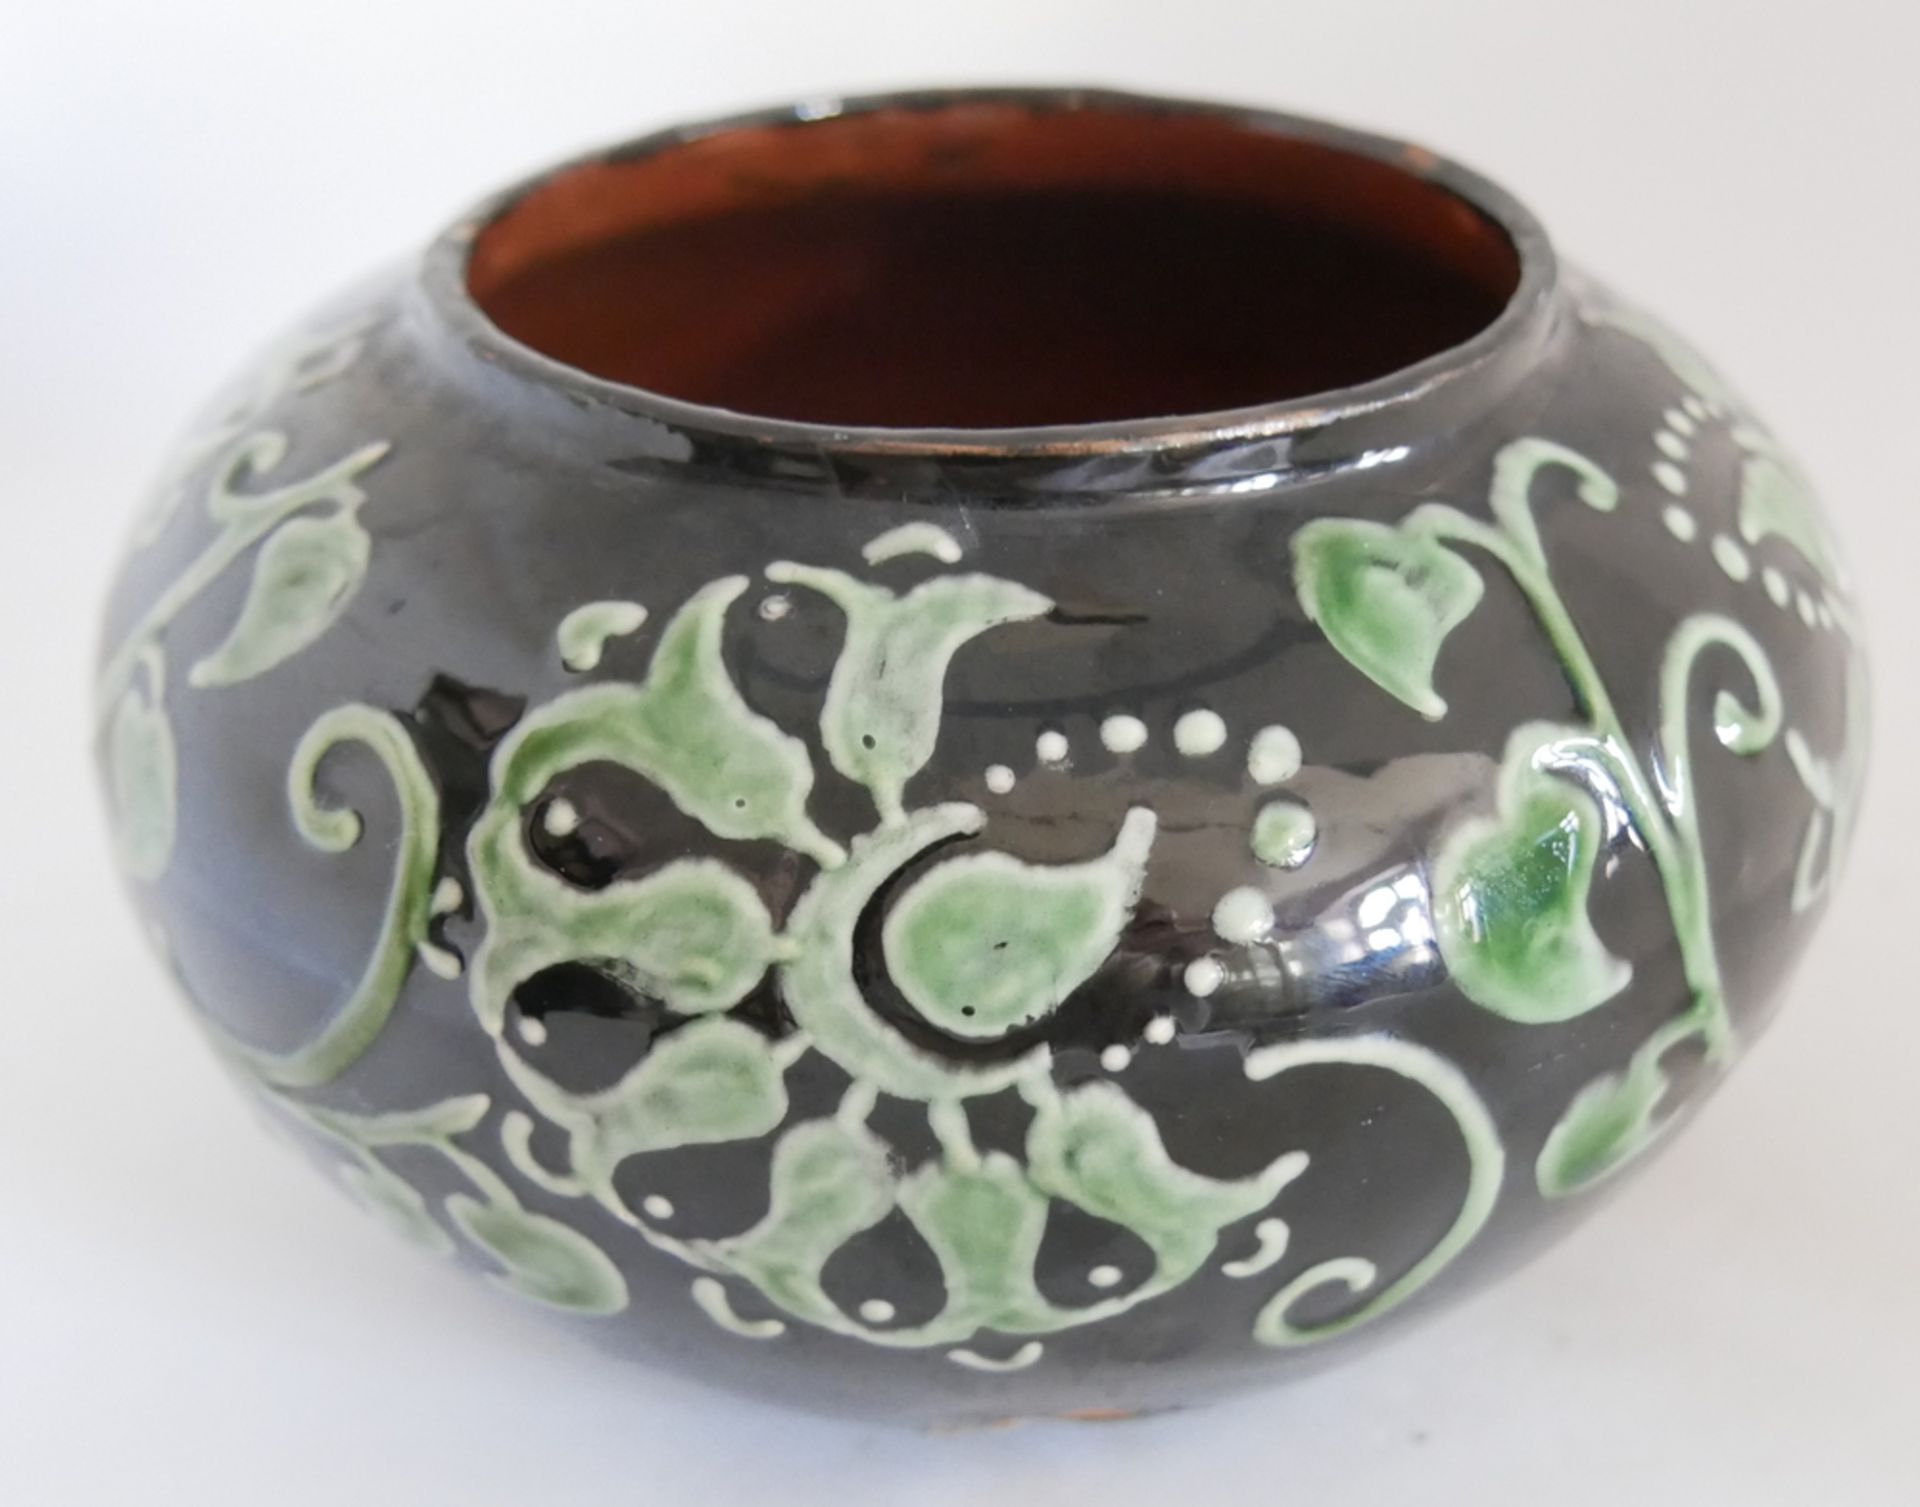 Keramik Vase Kandern am Boden Pressmarke KK im Viereck, Modellnr. 825, schwarz weiße Glasur. - Bild 2 aus 3